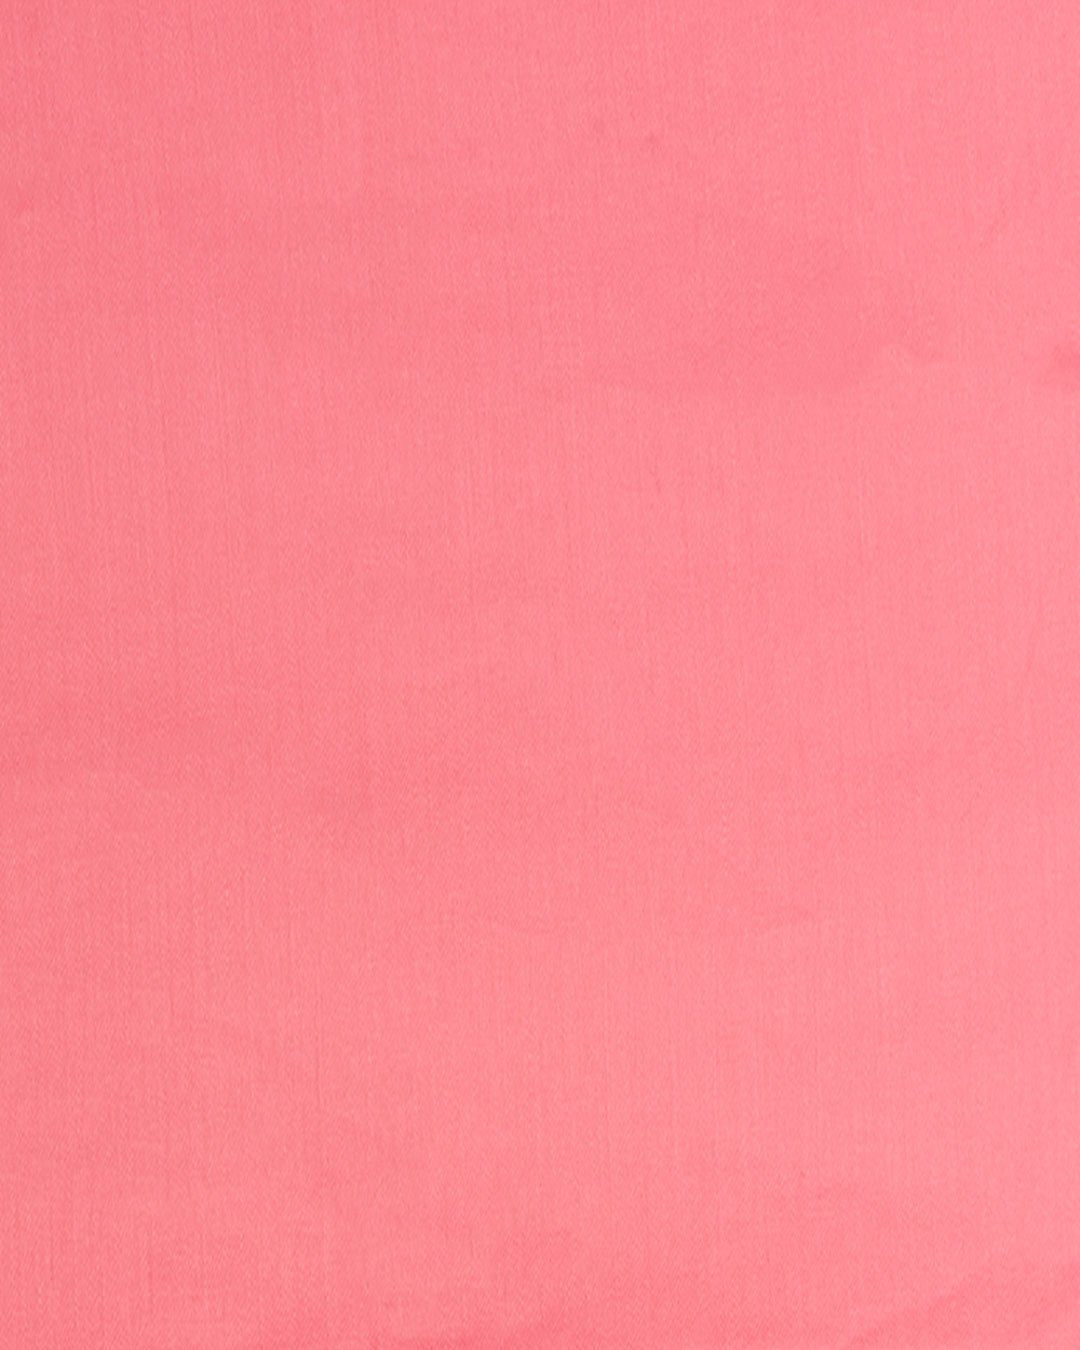 Sciarpa e/o stola in cotone morbido rosa pesca - Mya Accessories